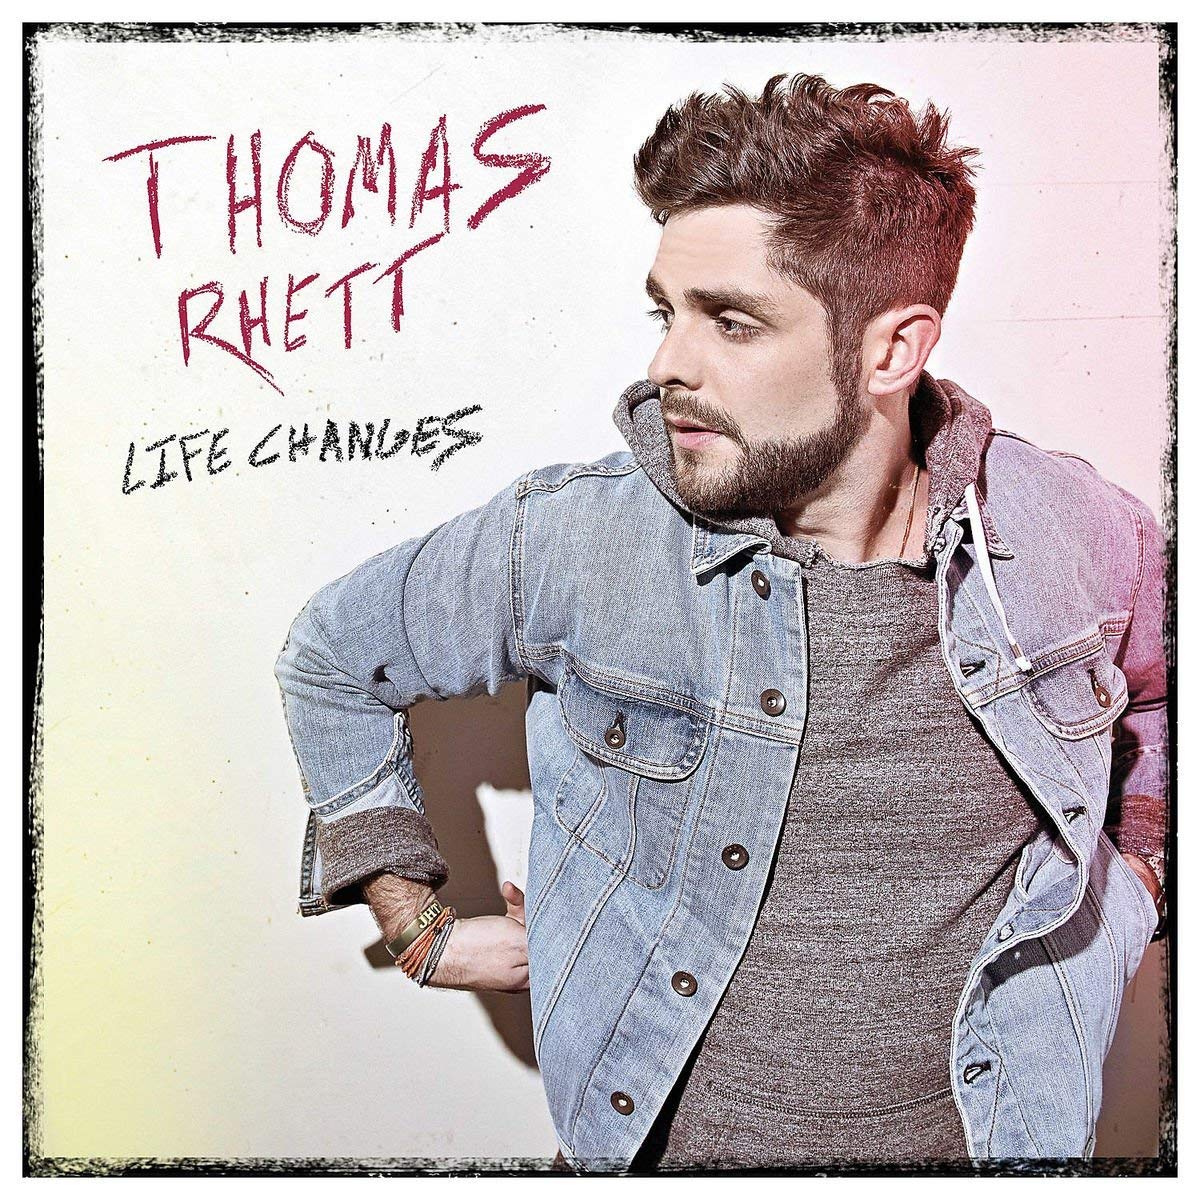 Thomas Rhett: Life Changes